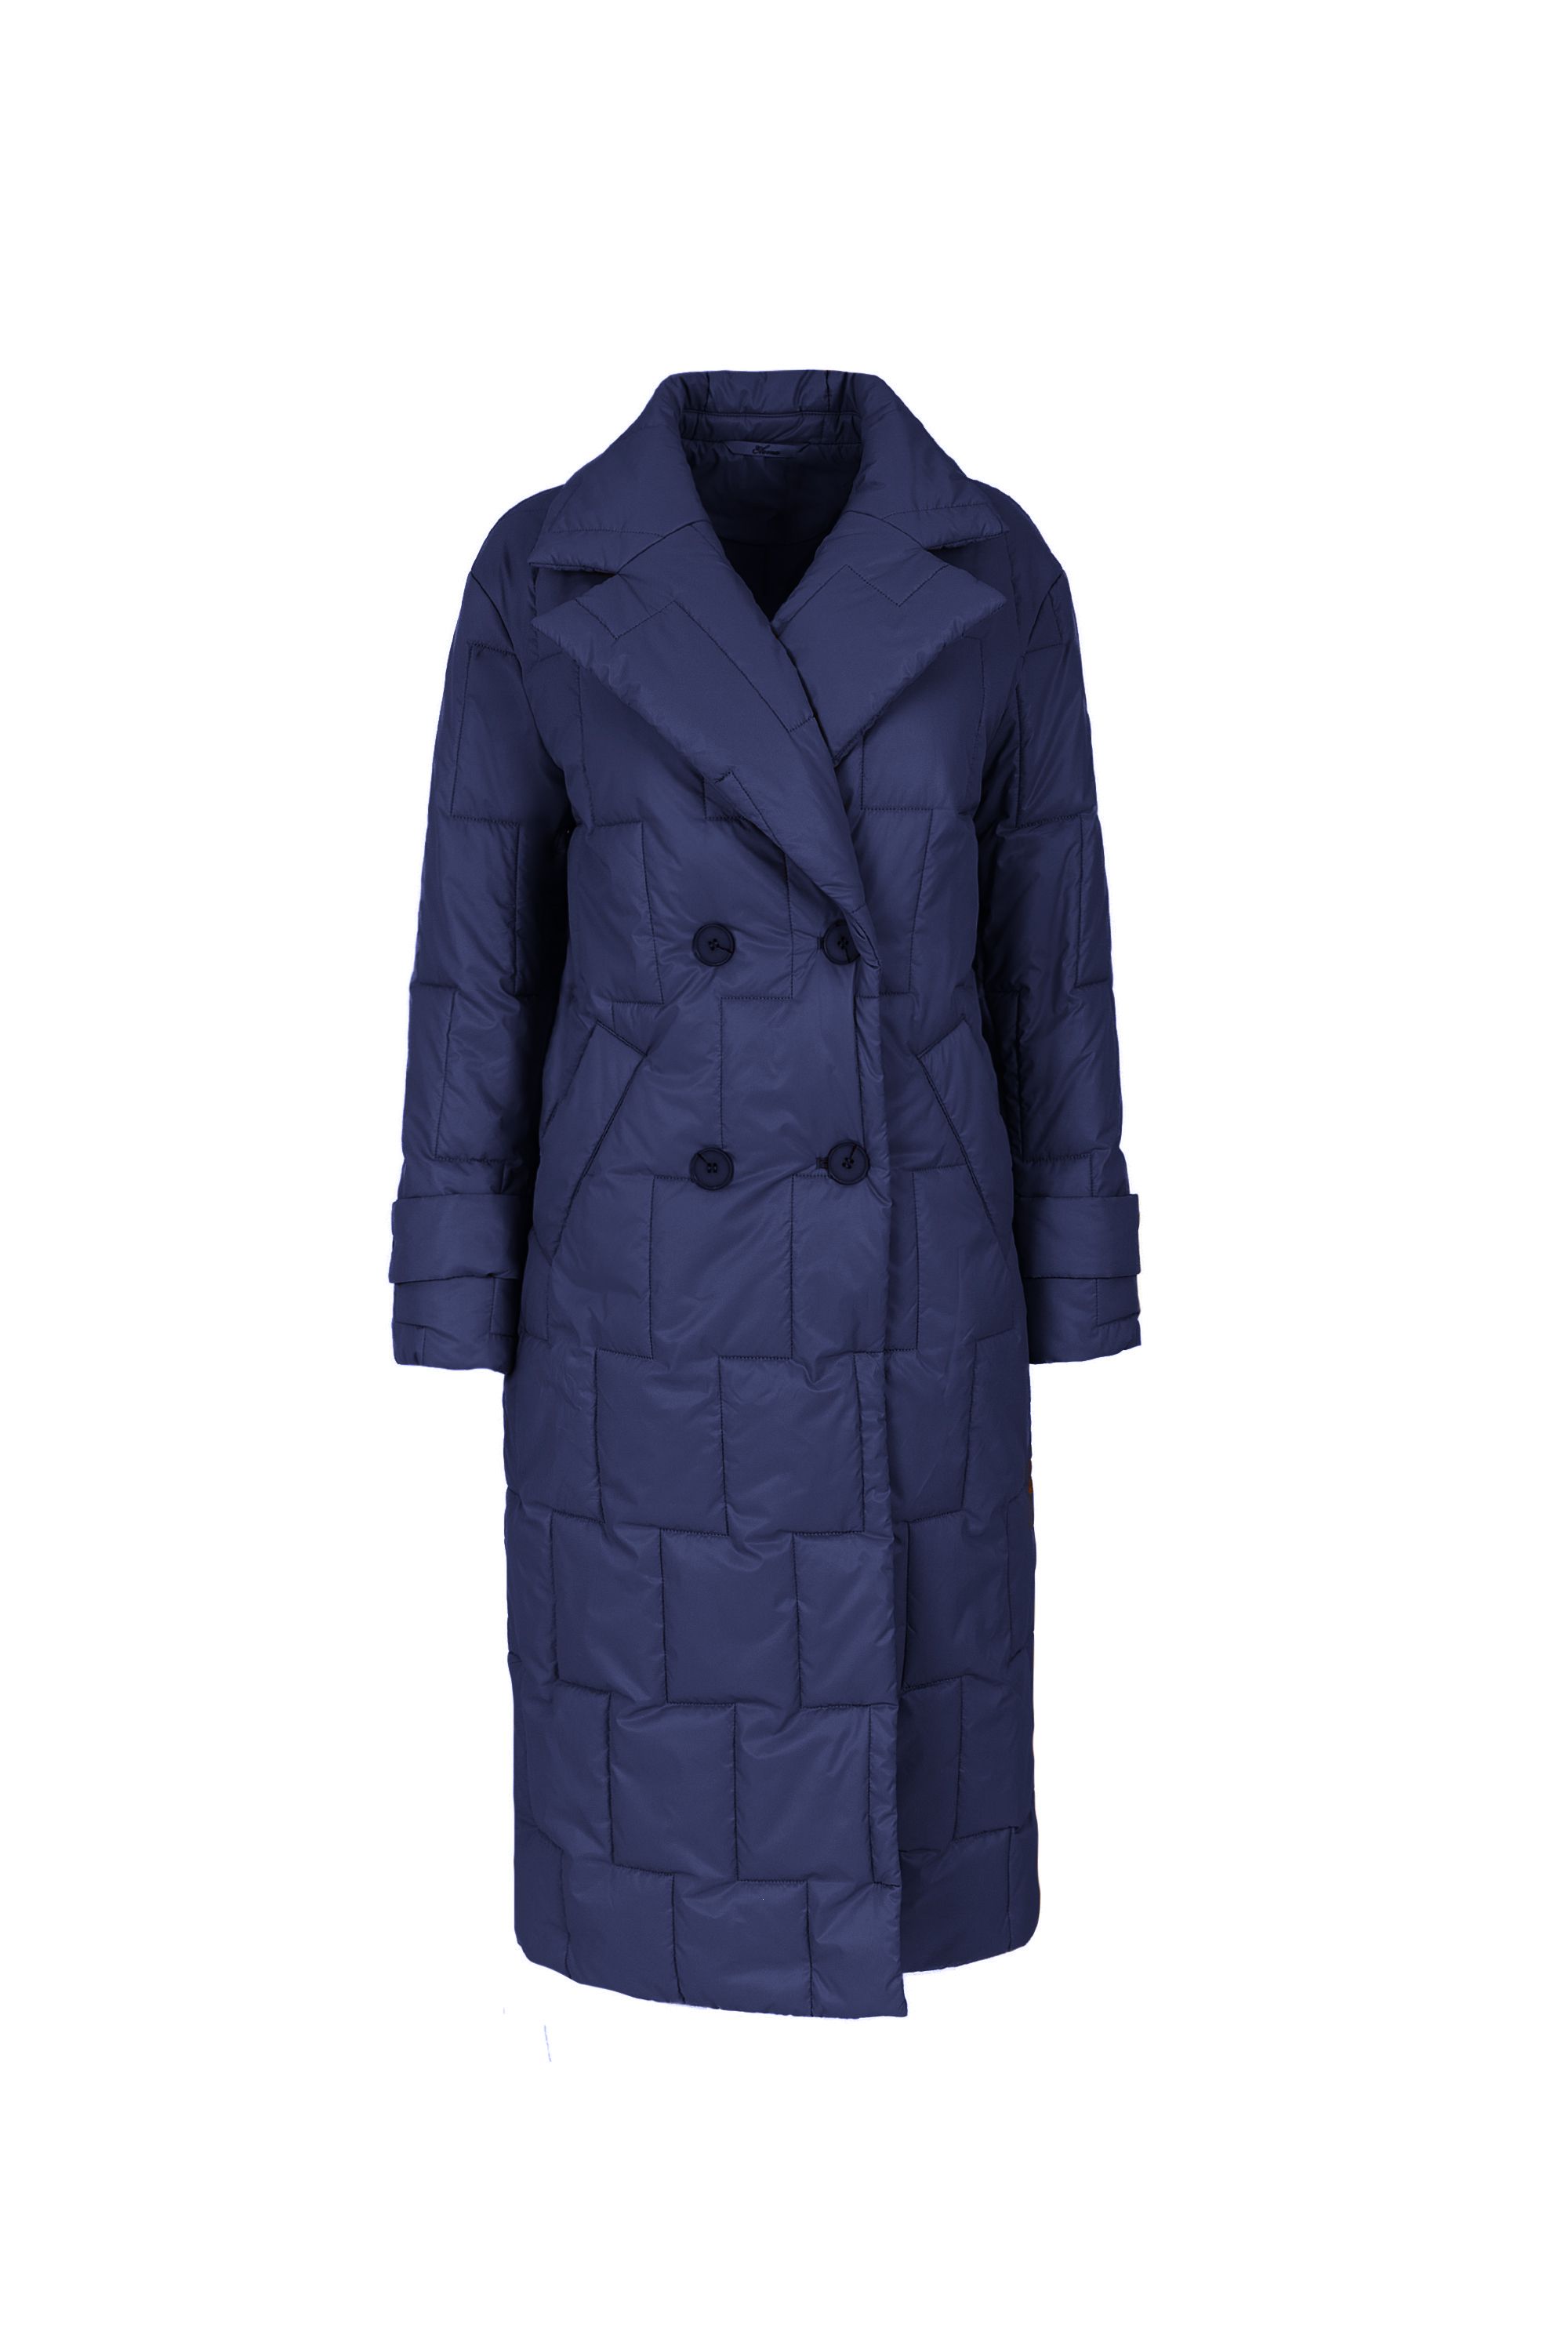 Пальто женское плащевое утепленное 5-12593-1. Фото 1.